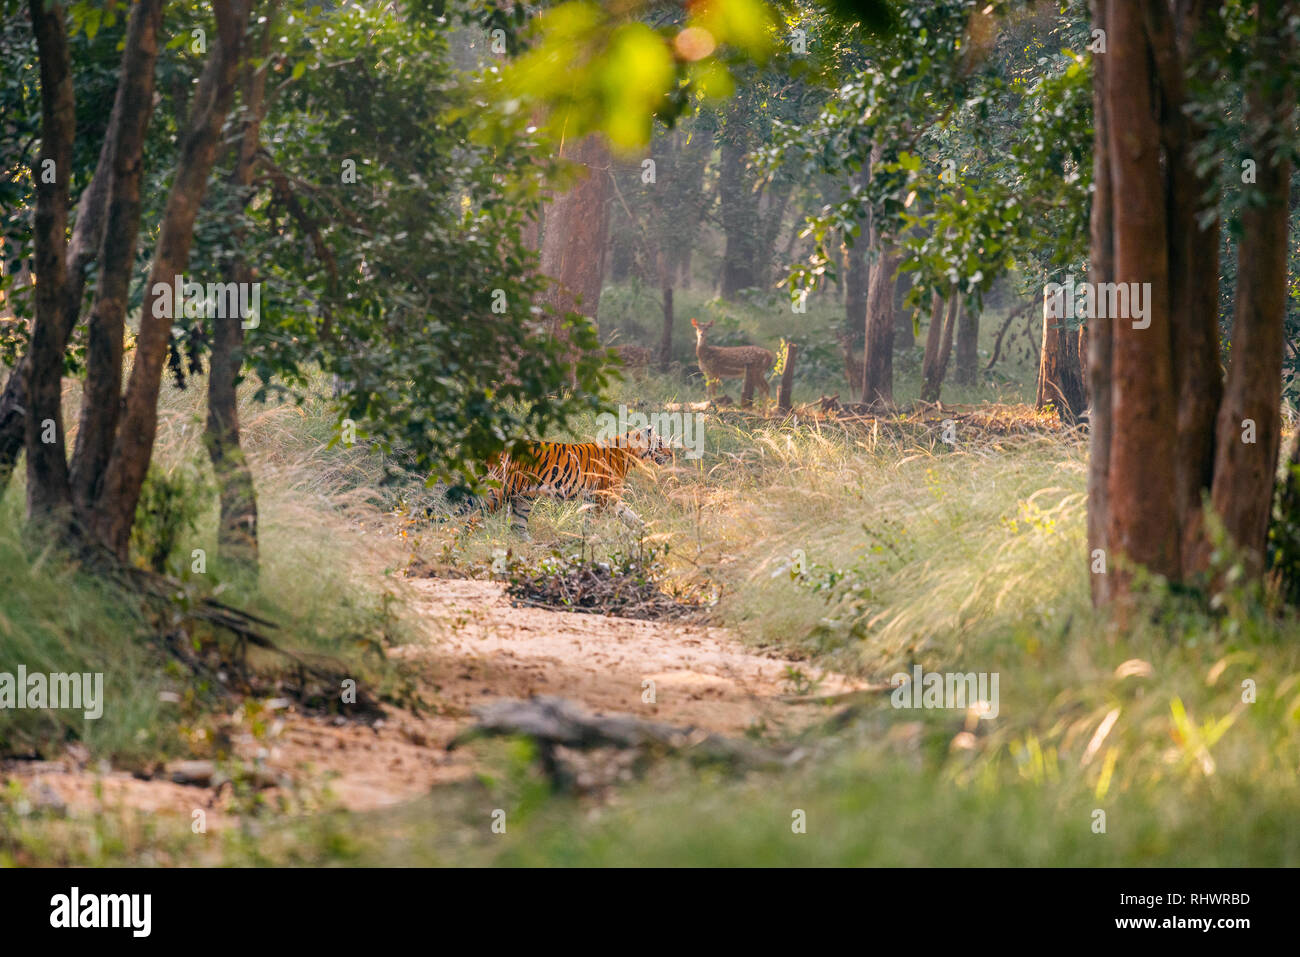 Ein Tiger Überqueren einer sorgfältig trocknen Flussbett durch eine chital Rotwild in Bandhavgarh Nationalpark, Madhya Pradesh beobachtet. Es gibt nur 3900 Wild Tiger links Stockfoto